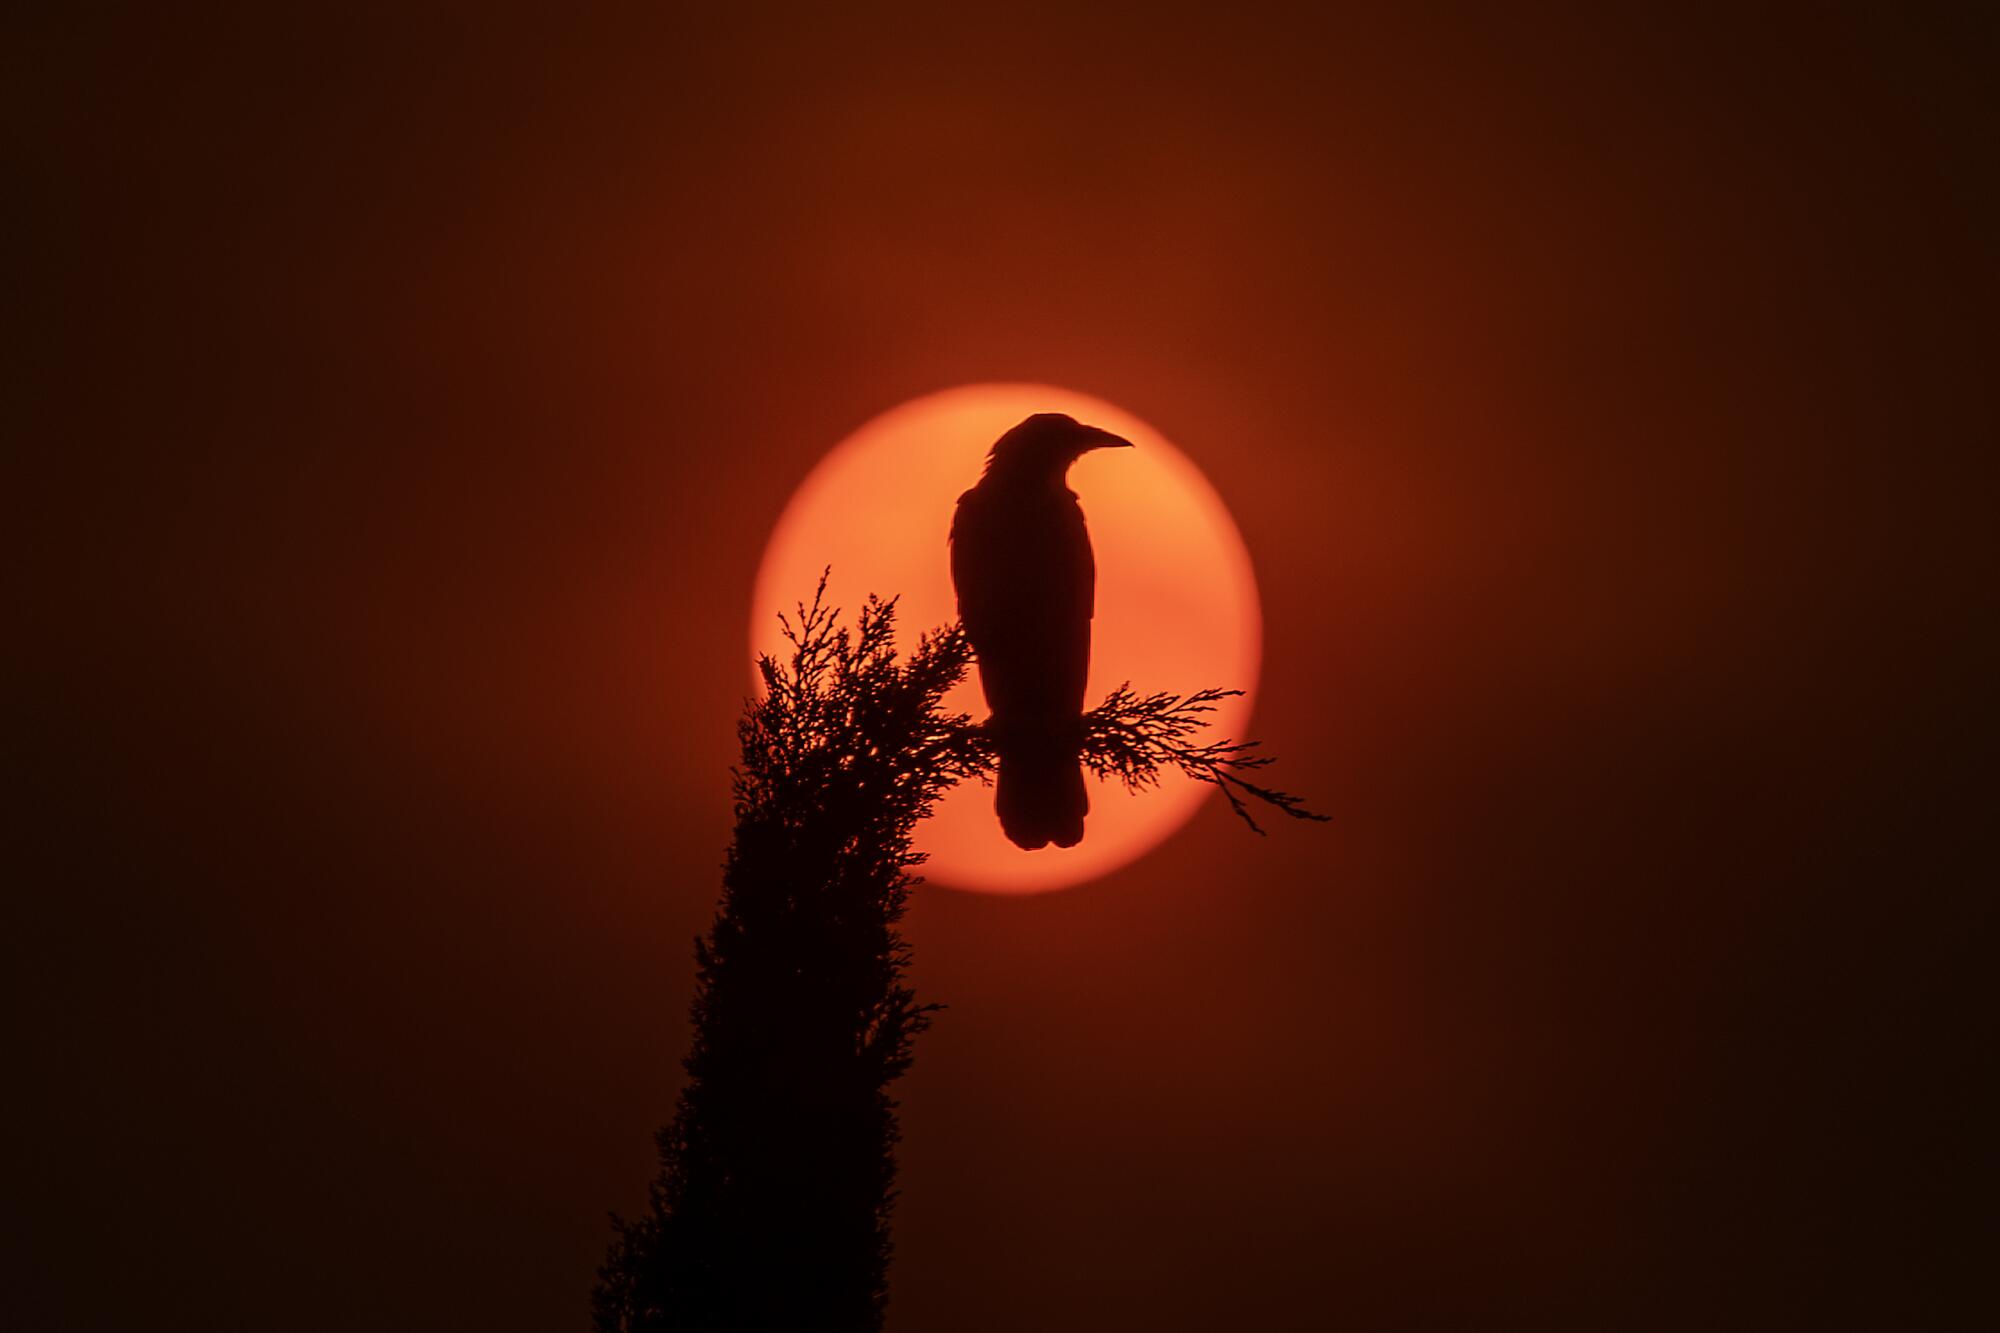 A crow sitting 